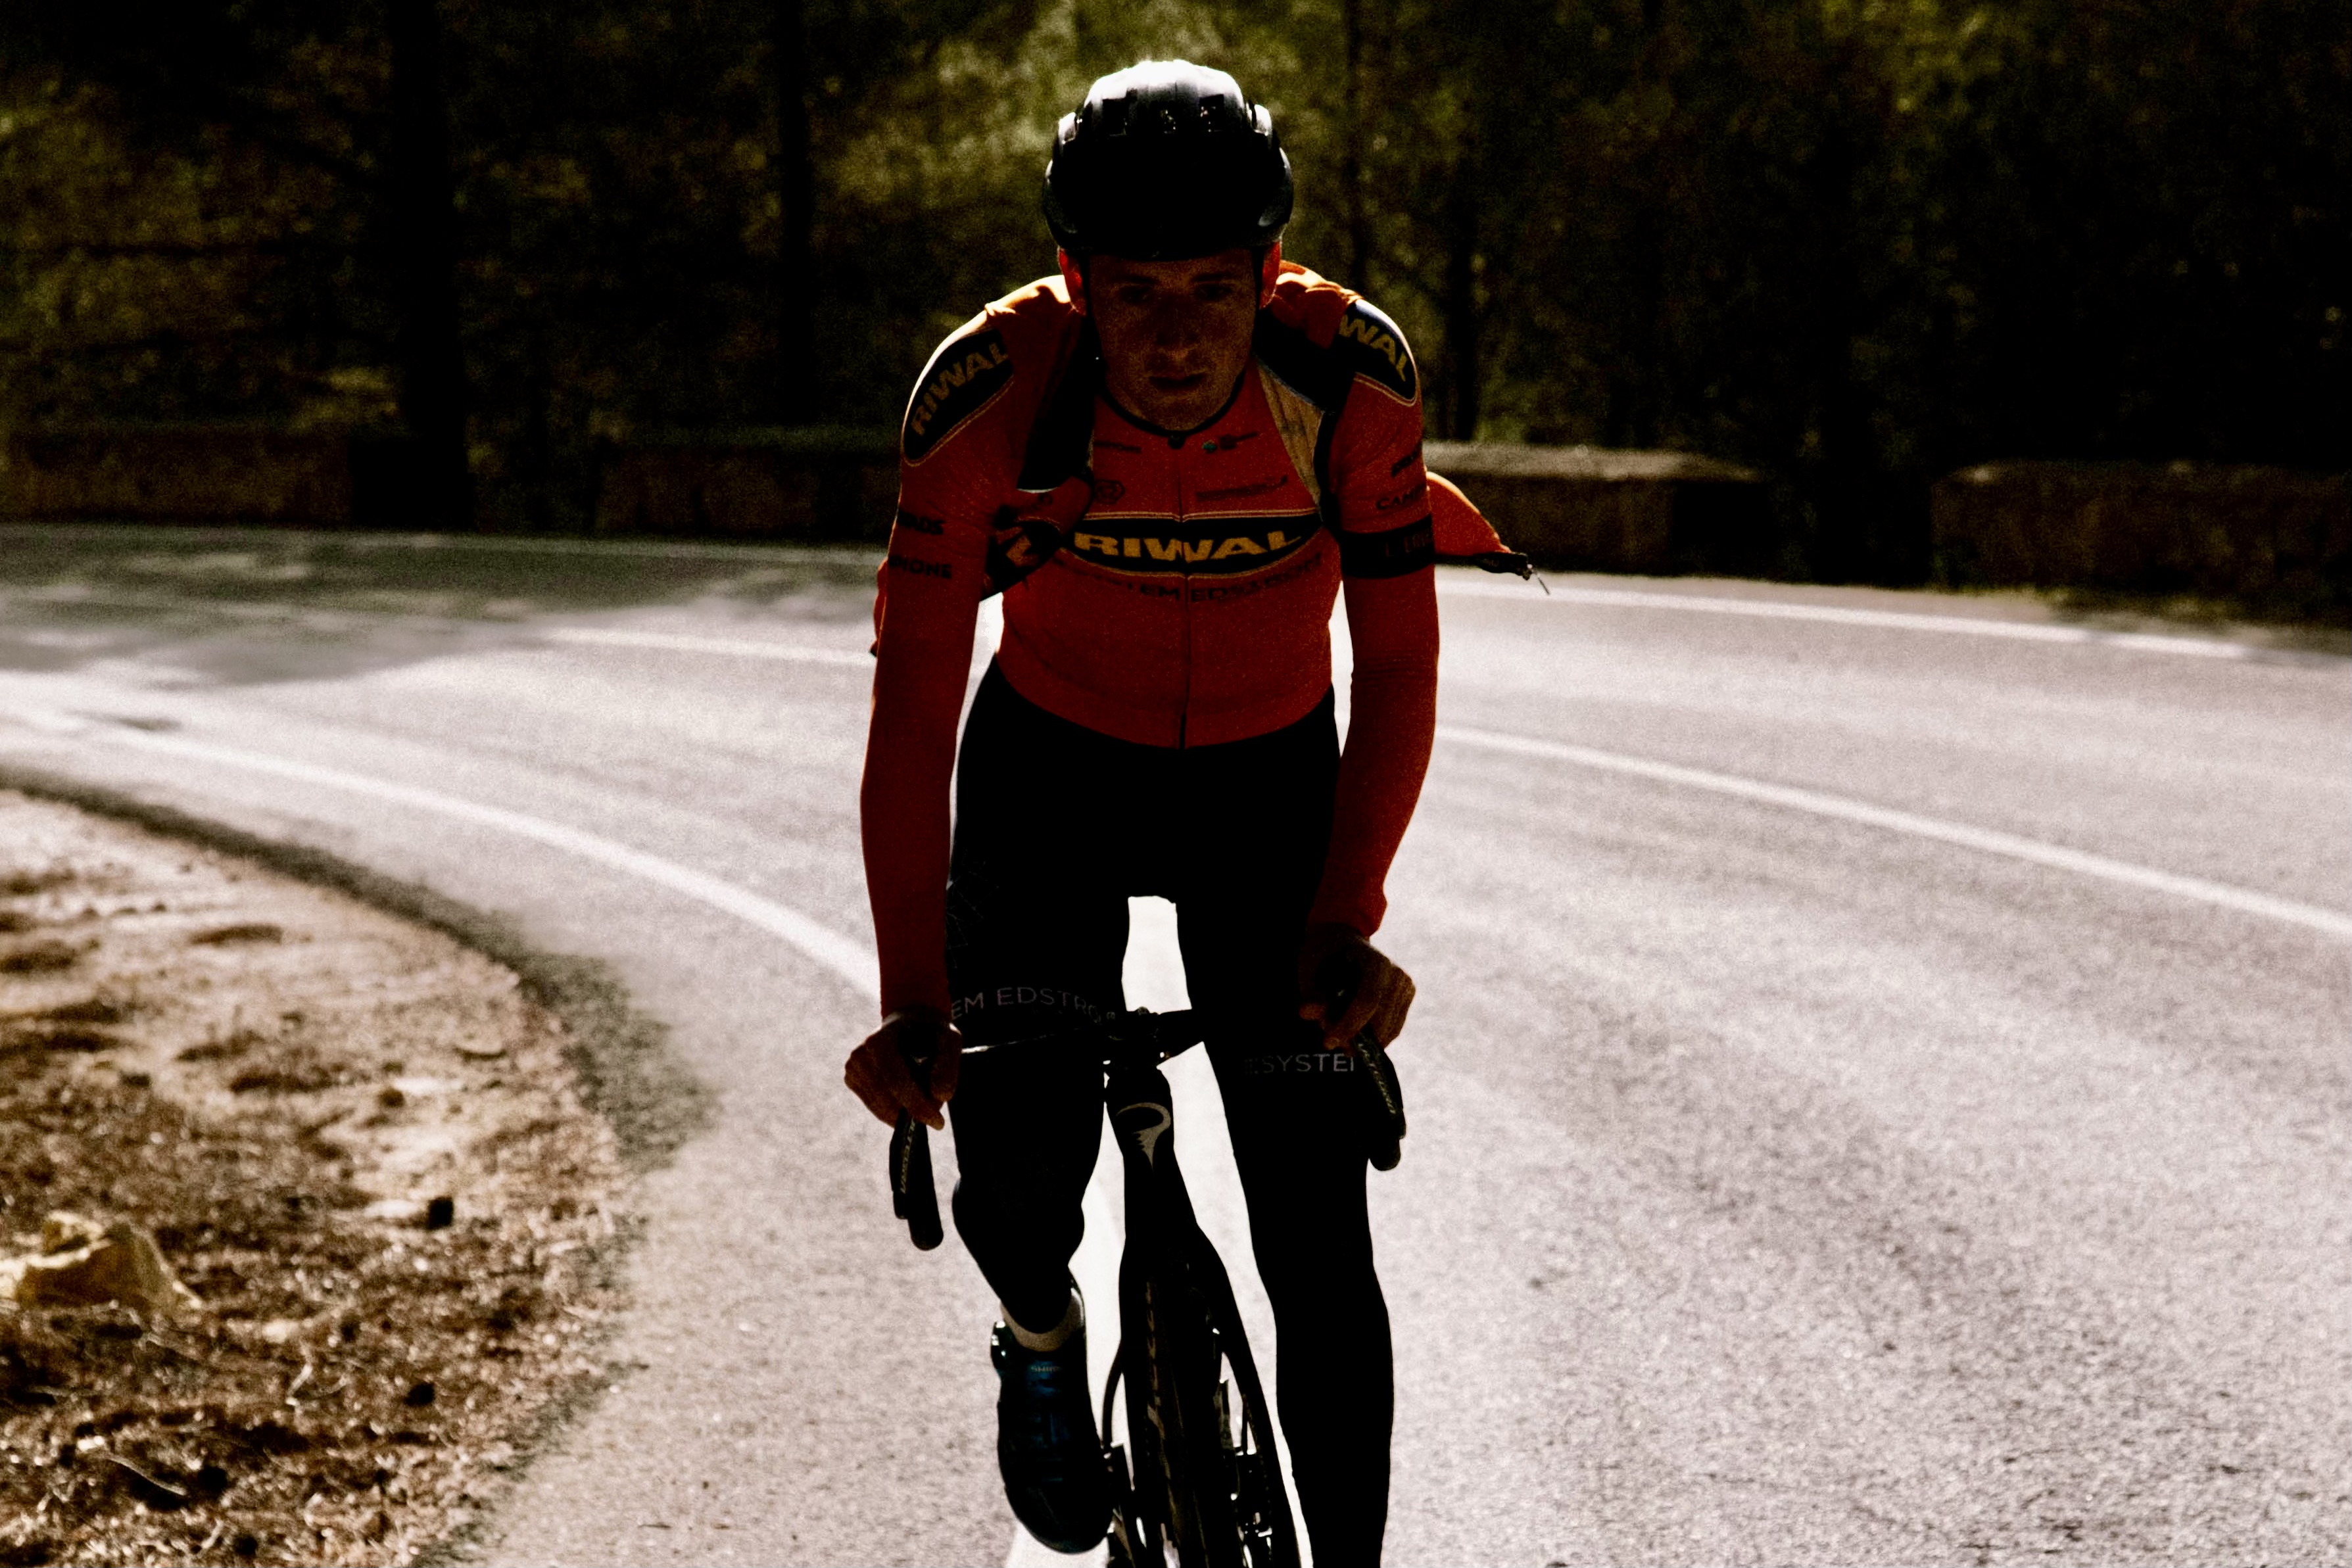 En förkylning ledde till hjärtsjukdom och drygt två månaders vila. Nu råder cykelstjärnan Lucas Eriksson alla att ta det försiktigt med träning om man är krasslig.